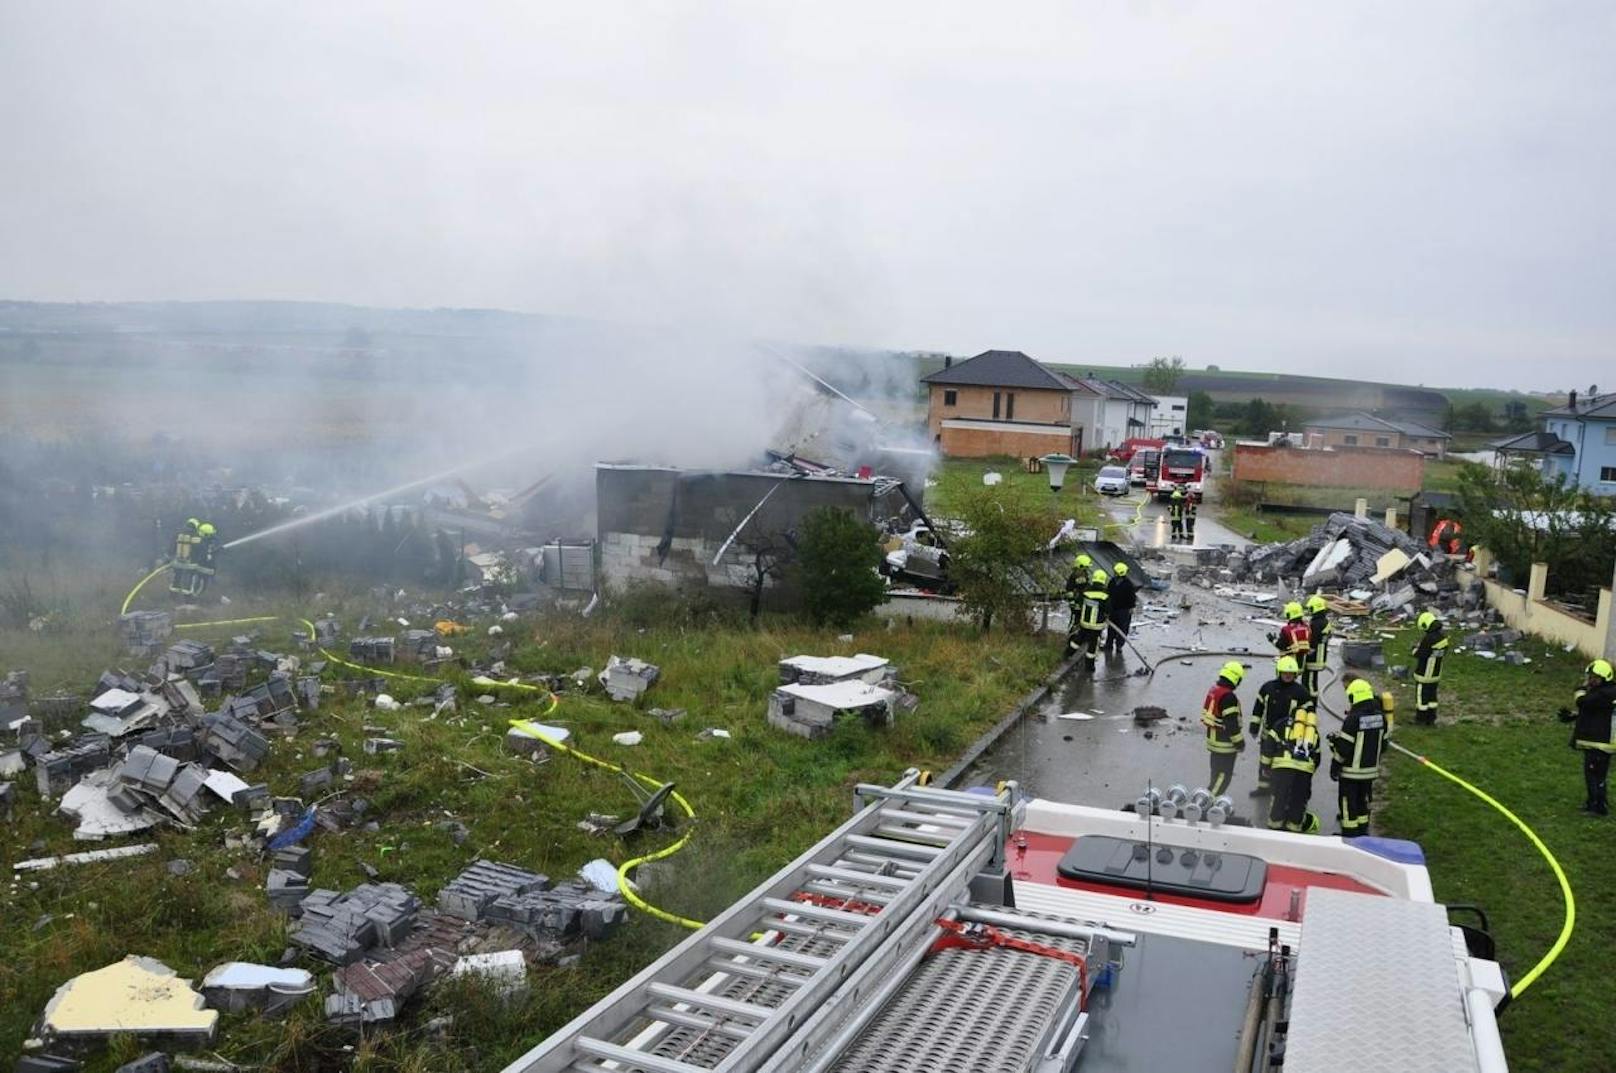 Verwüstung nach einer Explosion in Aspersdorf (Hollabrunn): Das Haus wurde dabei völlig zerstört.